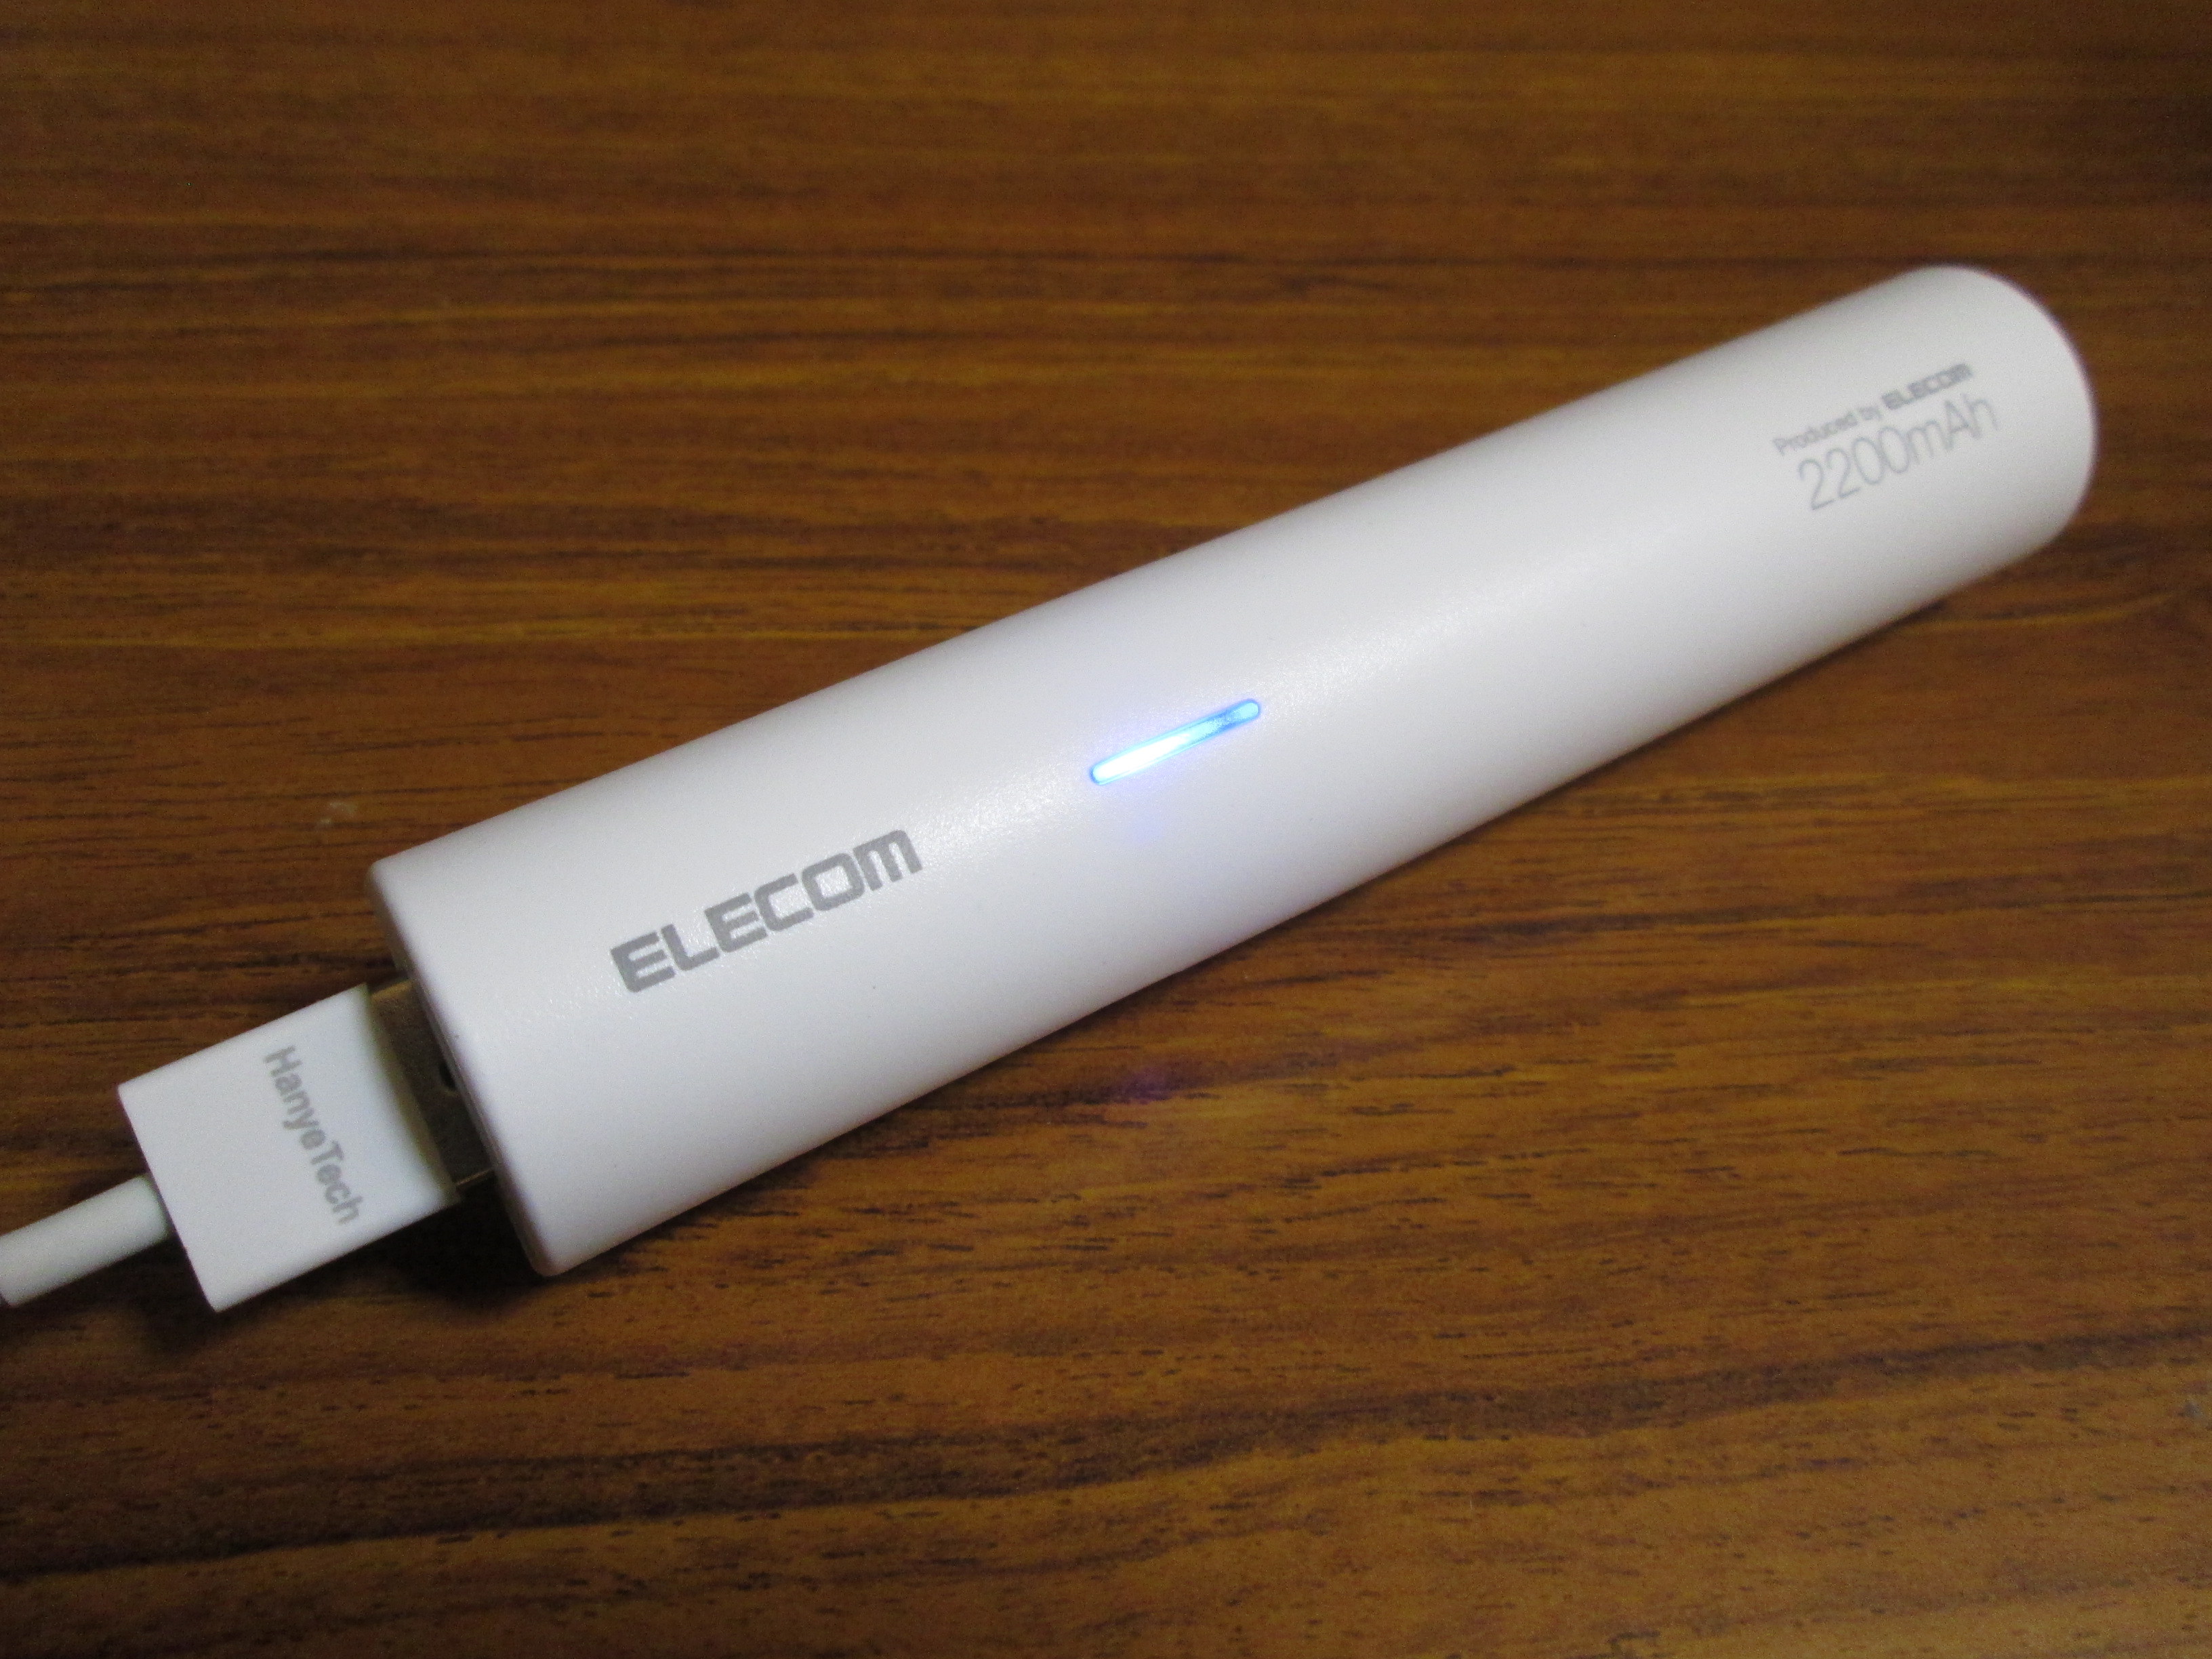 モバイルバッテリー Elecom De M01l 0810を買った ガジェットブログ Gadget Blog